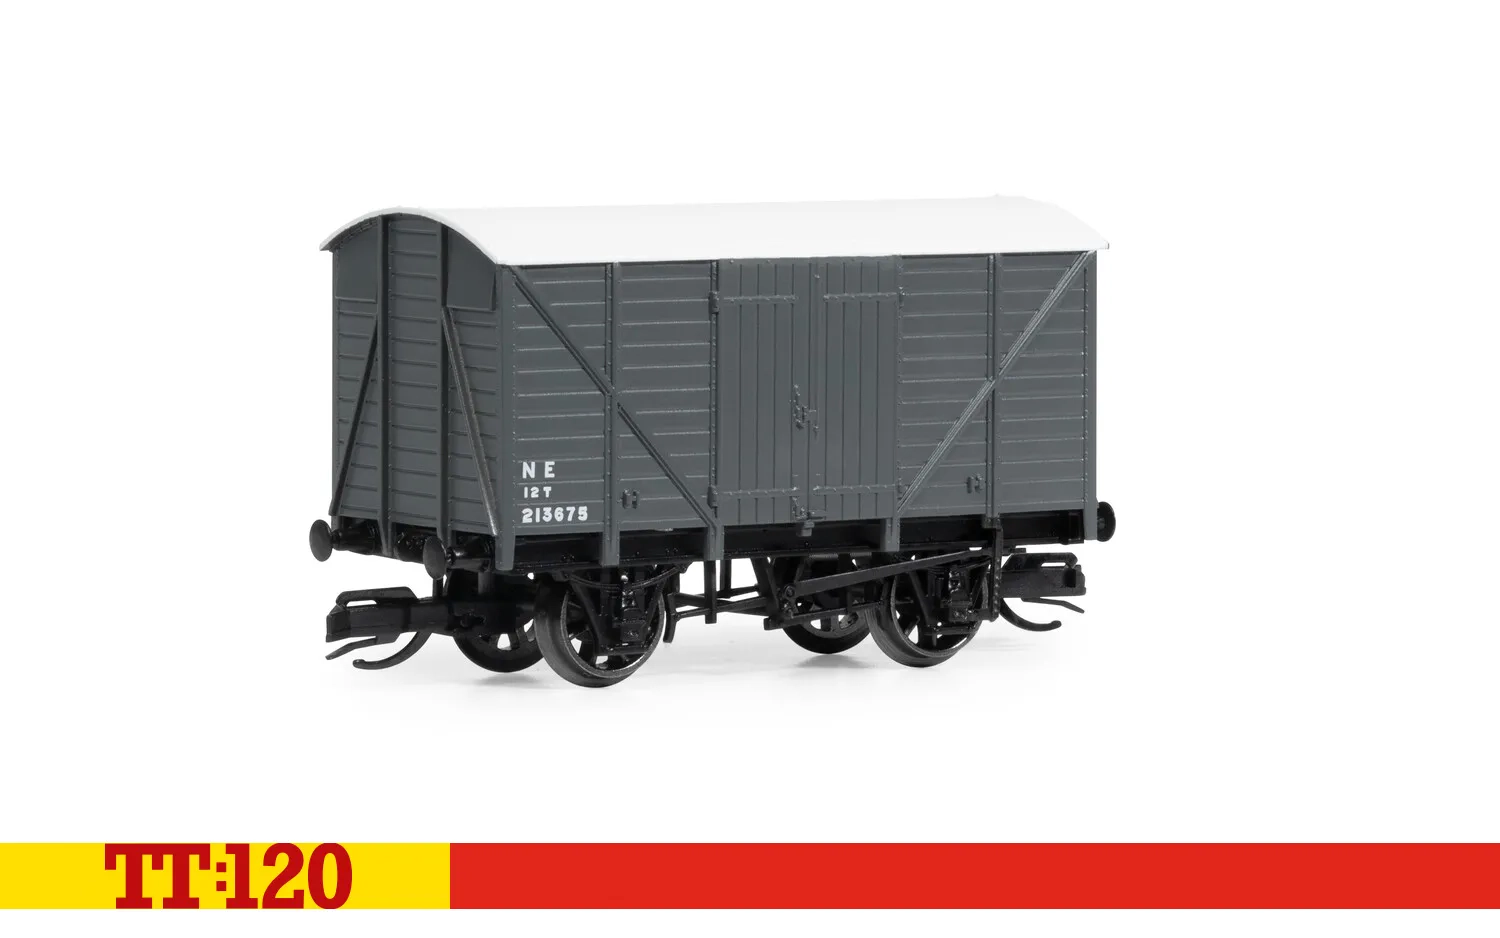 LNER gedeckter Güterwagen, 727446 - Ep. 3